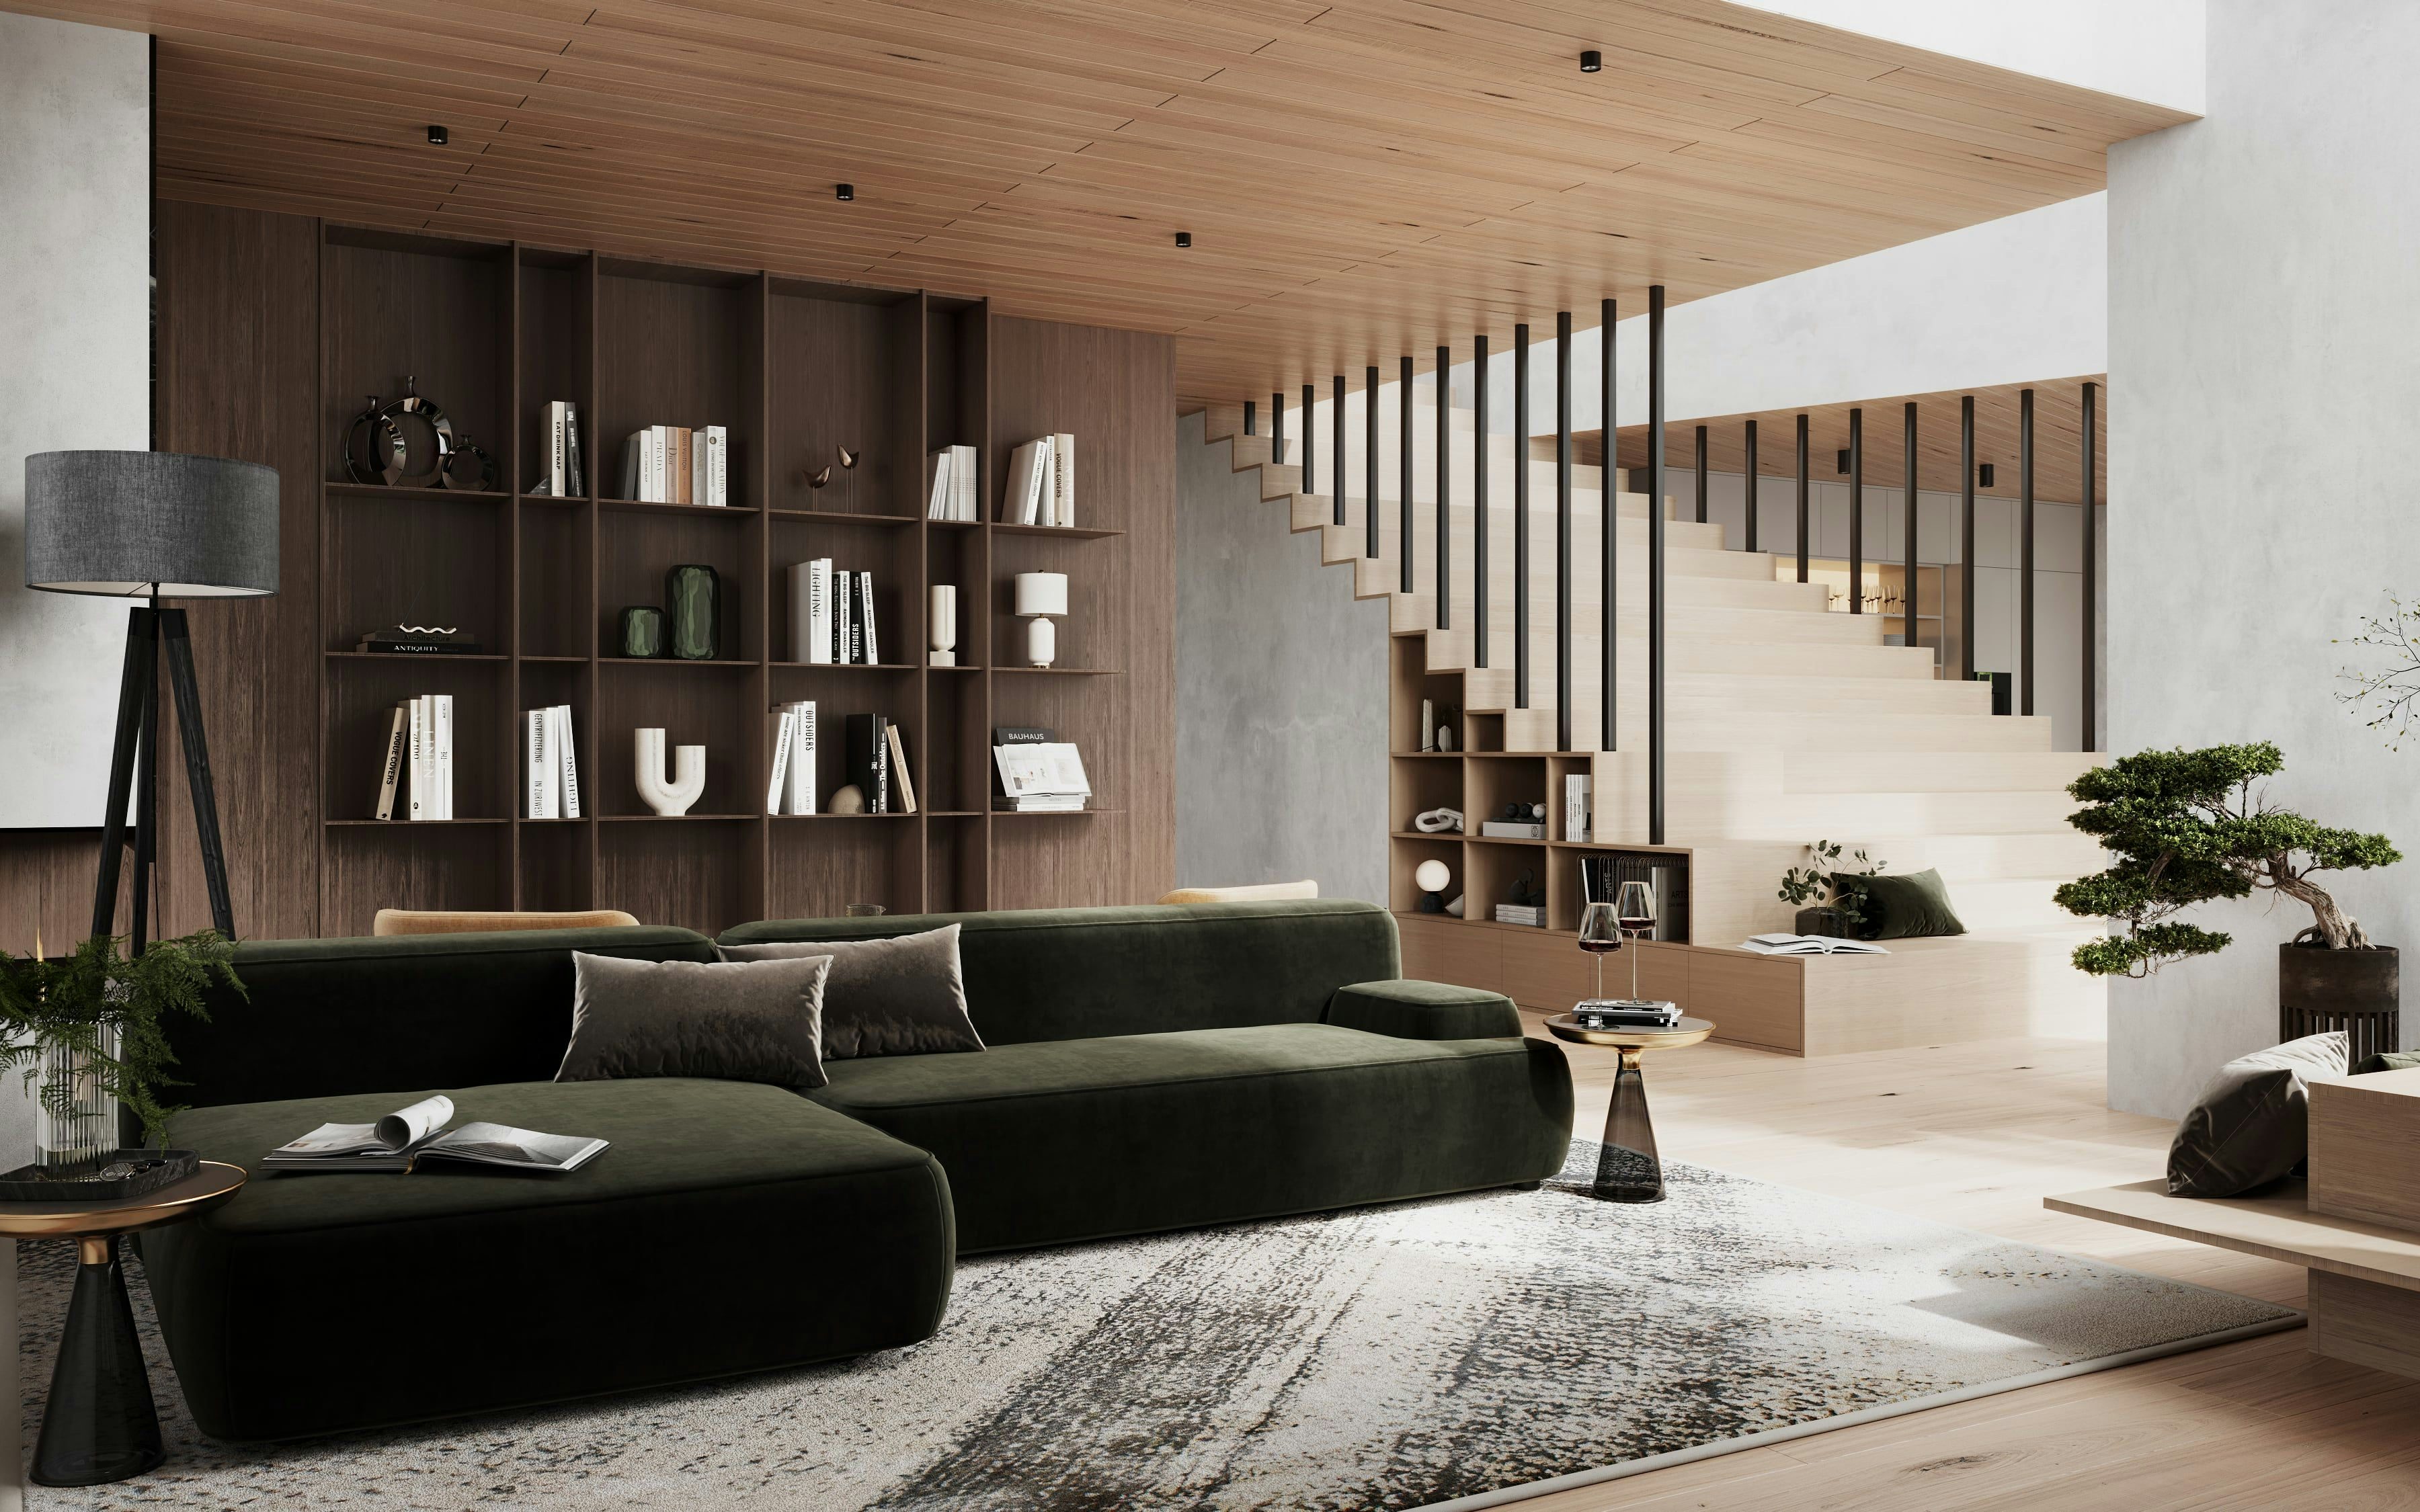 3D Architekturvisualisierung von Wohnzimmer mit Treppe in einem Einfamilienhaus in Berlin, Deutschland